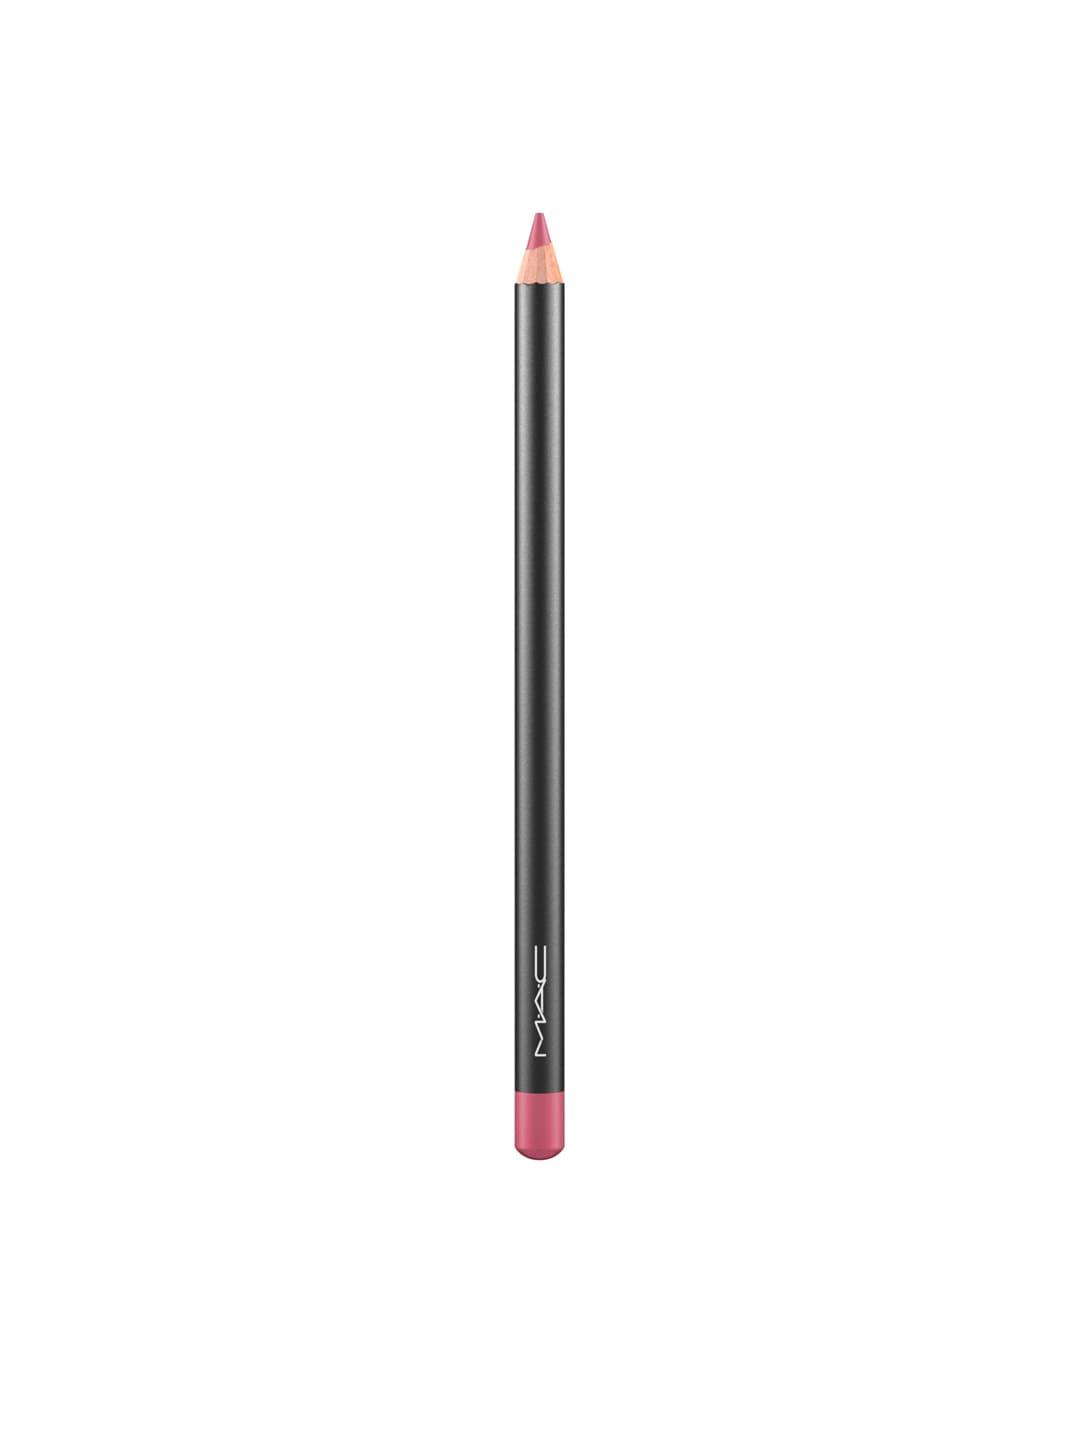 m.a.c longwear tansfer proof lip liner pencil - soar 1.45 g